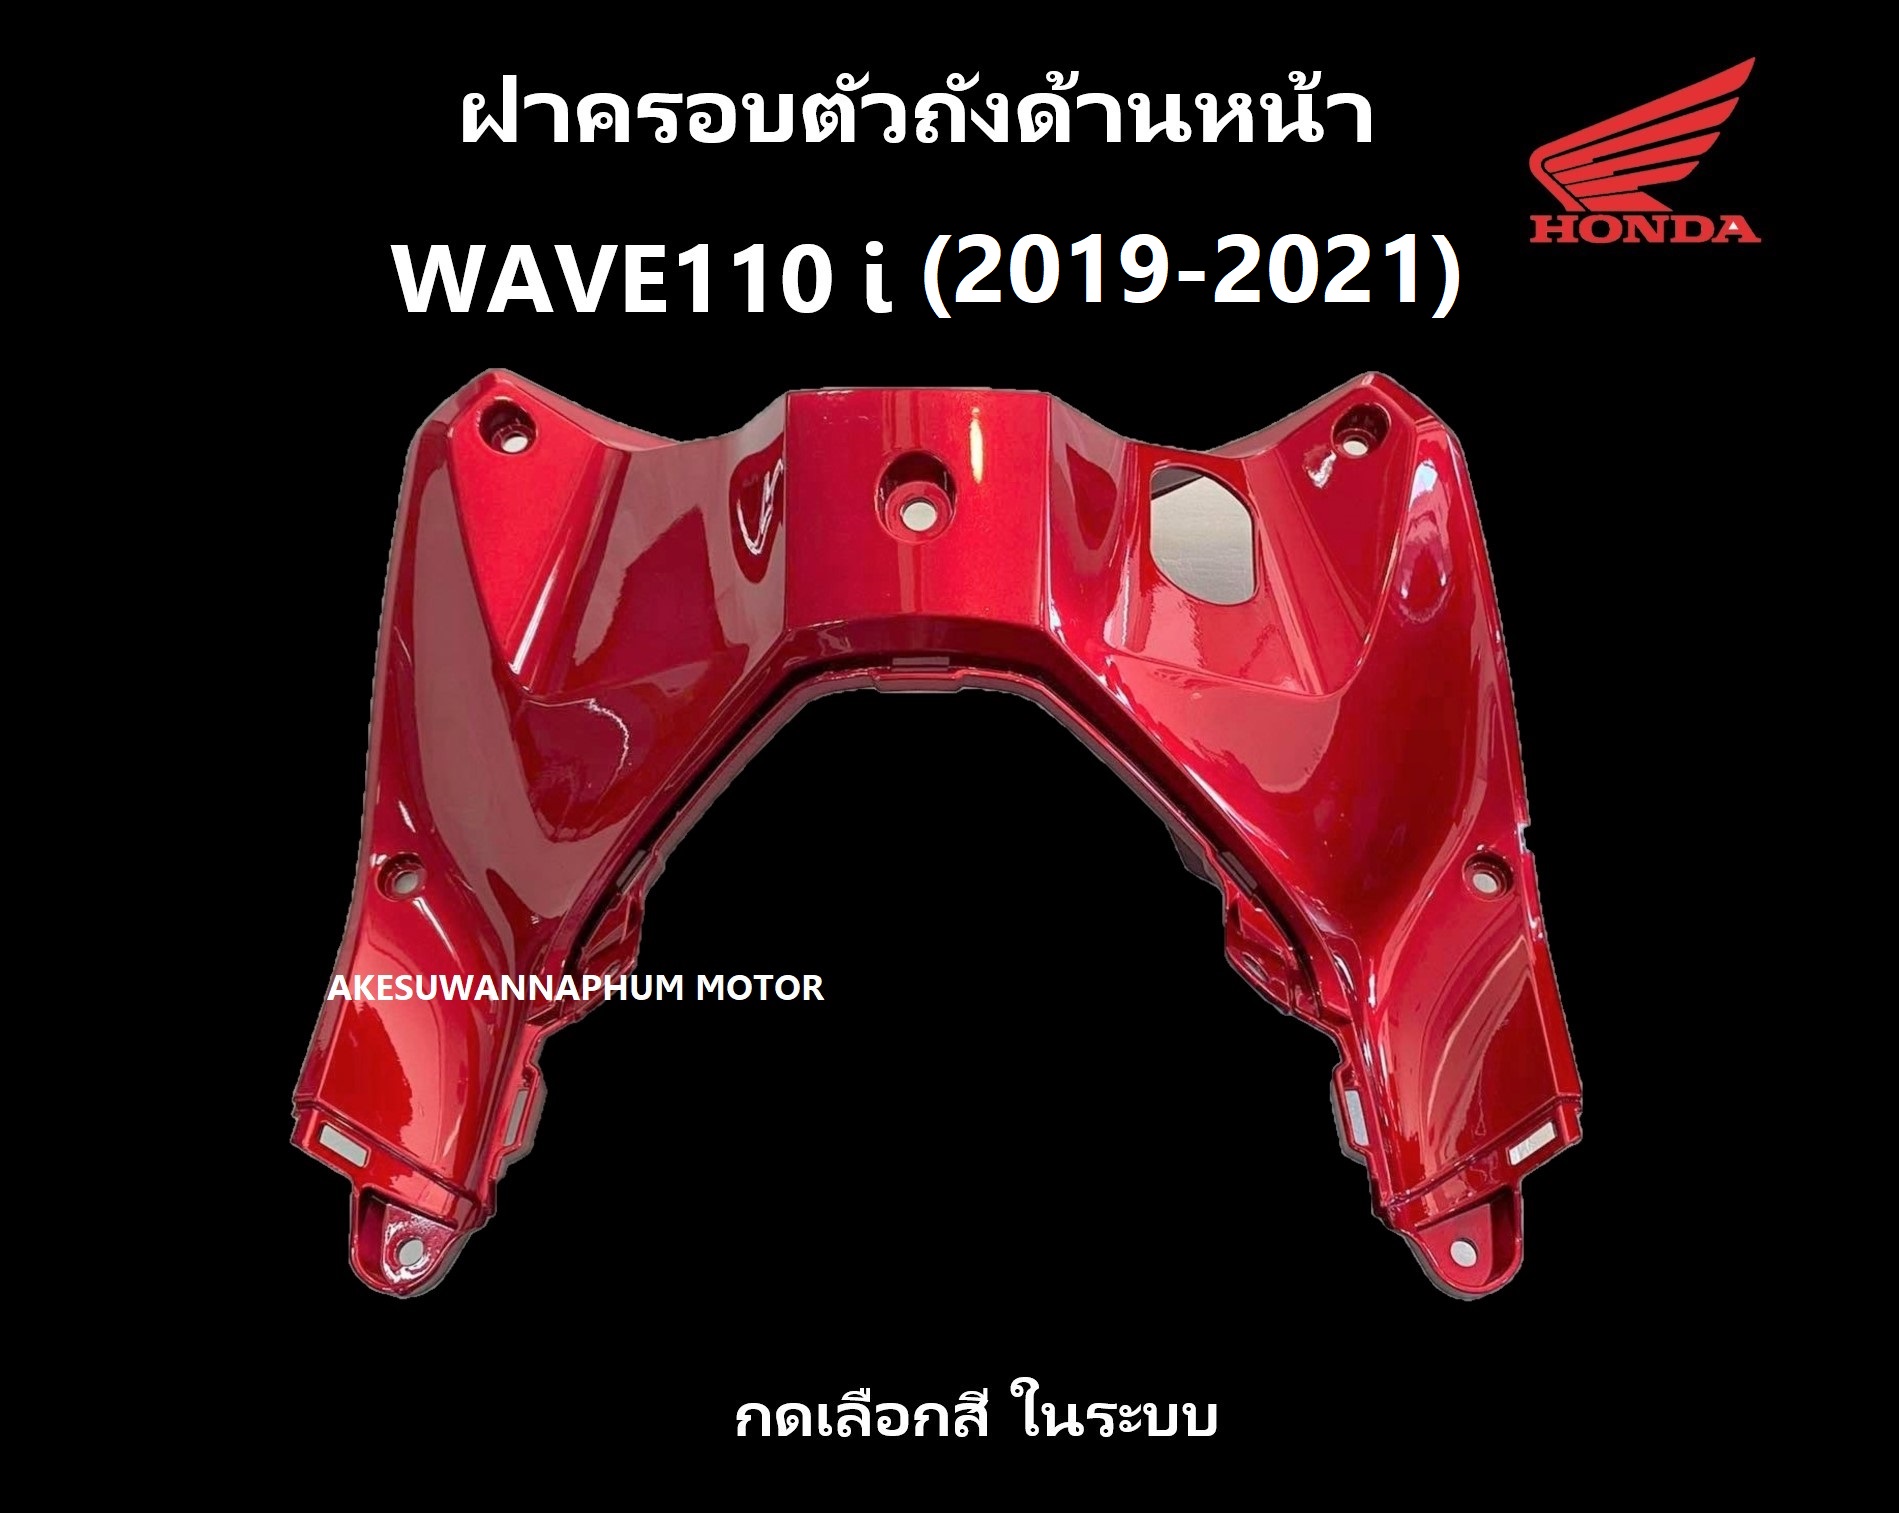 ฝาครอบตัวถังด้านหน้า รถมอเตอร์ไซต์ เวฟ110ไอ ปี 2019-2021 มีครบสี รุ่นไฟ LED เฟรม หรือ กาบรถ ฝาครอบถังหน้า WAVE110i มีครบสี อะไหล่ ฮอนด้า แท้ ศูนย์ฮอ